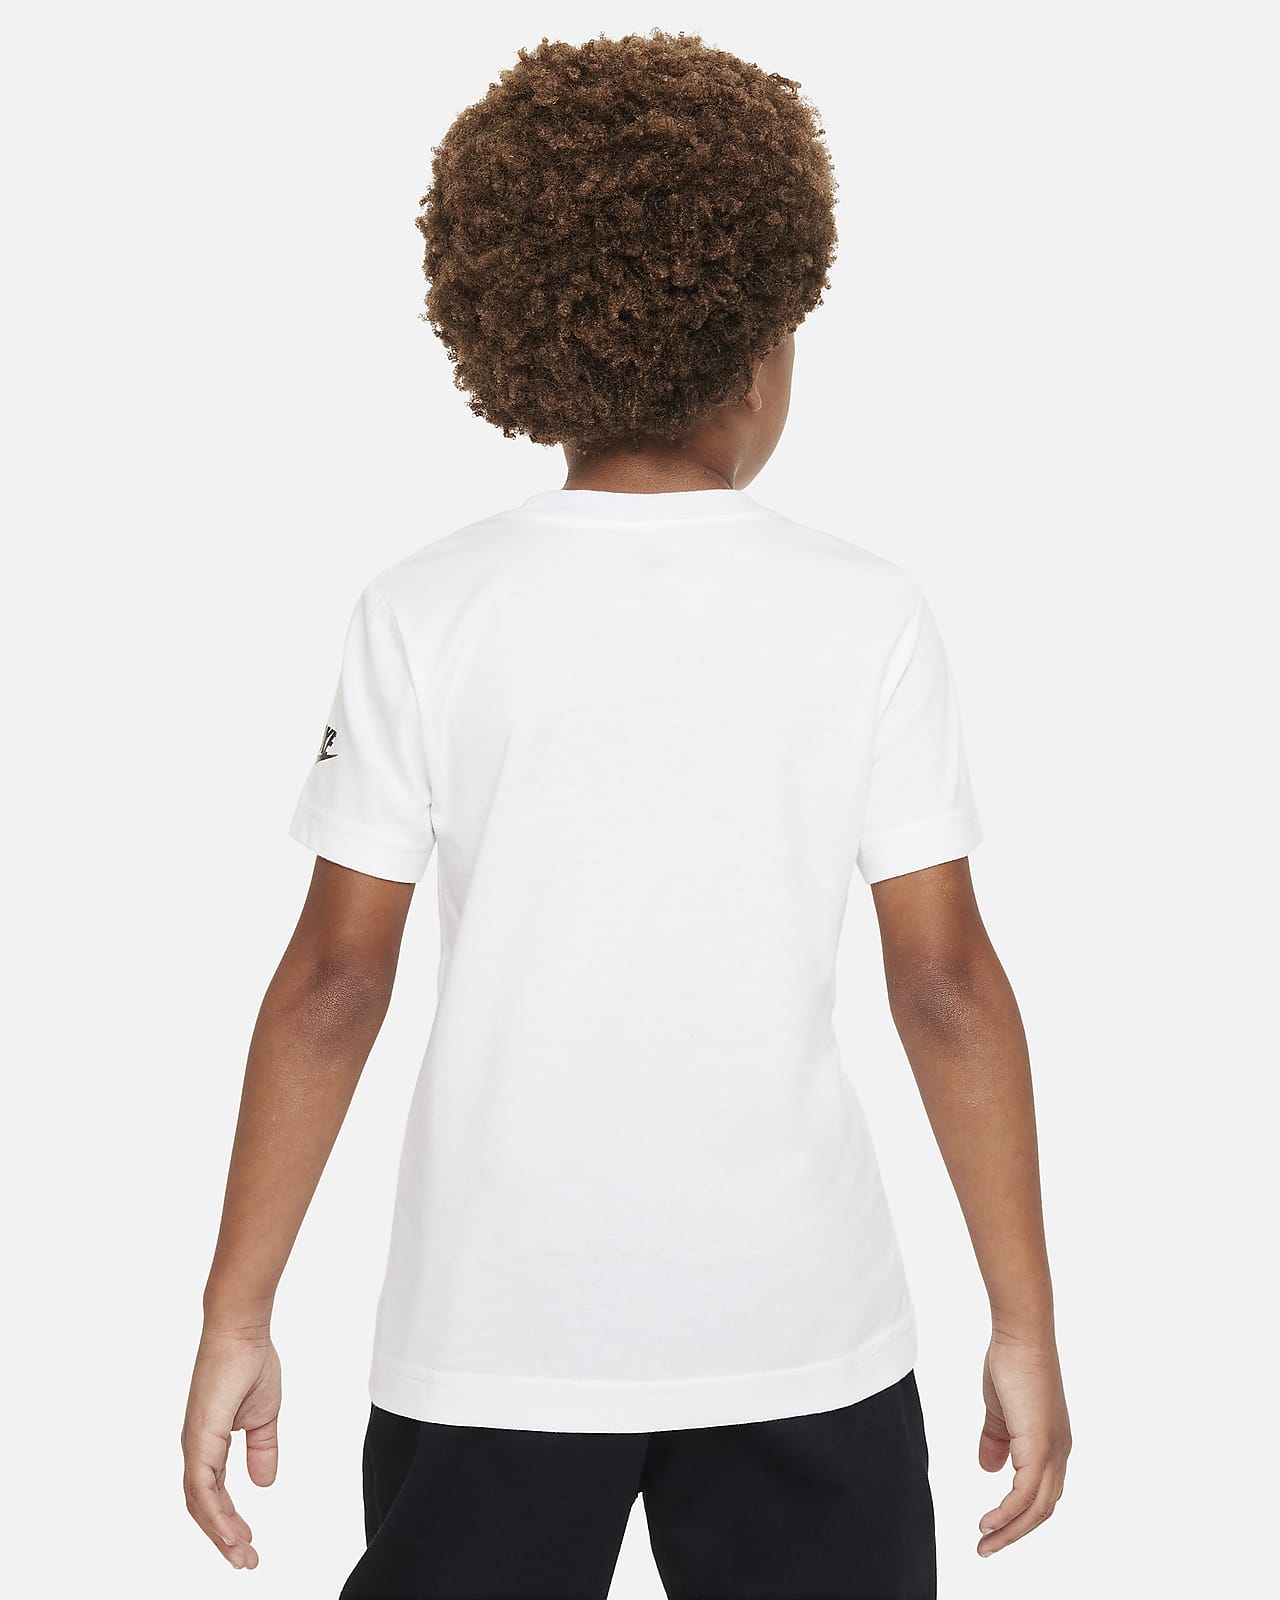 T-shirt Nike Futura för barn